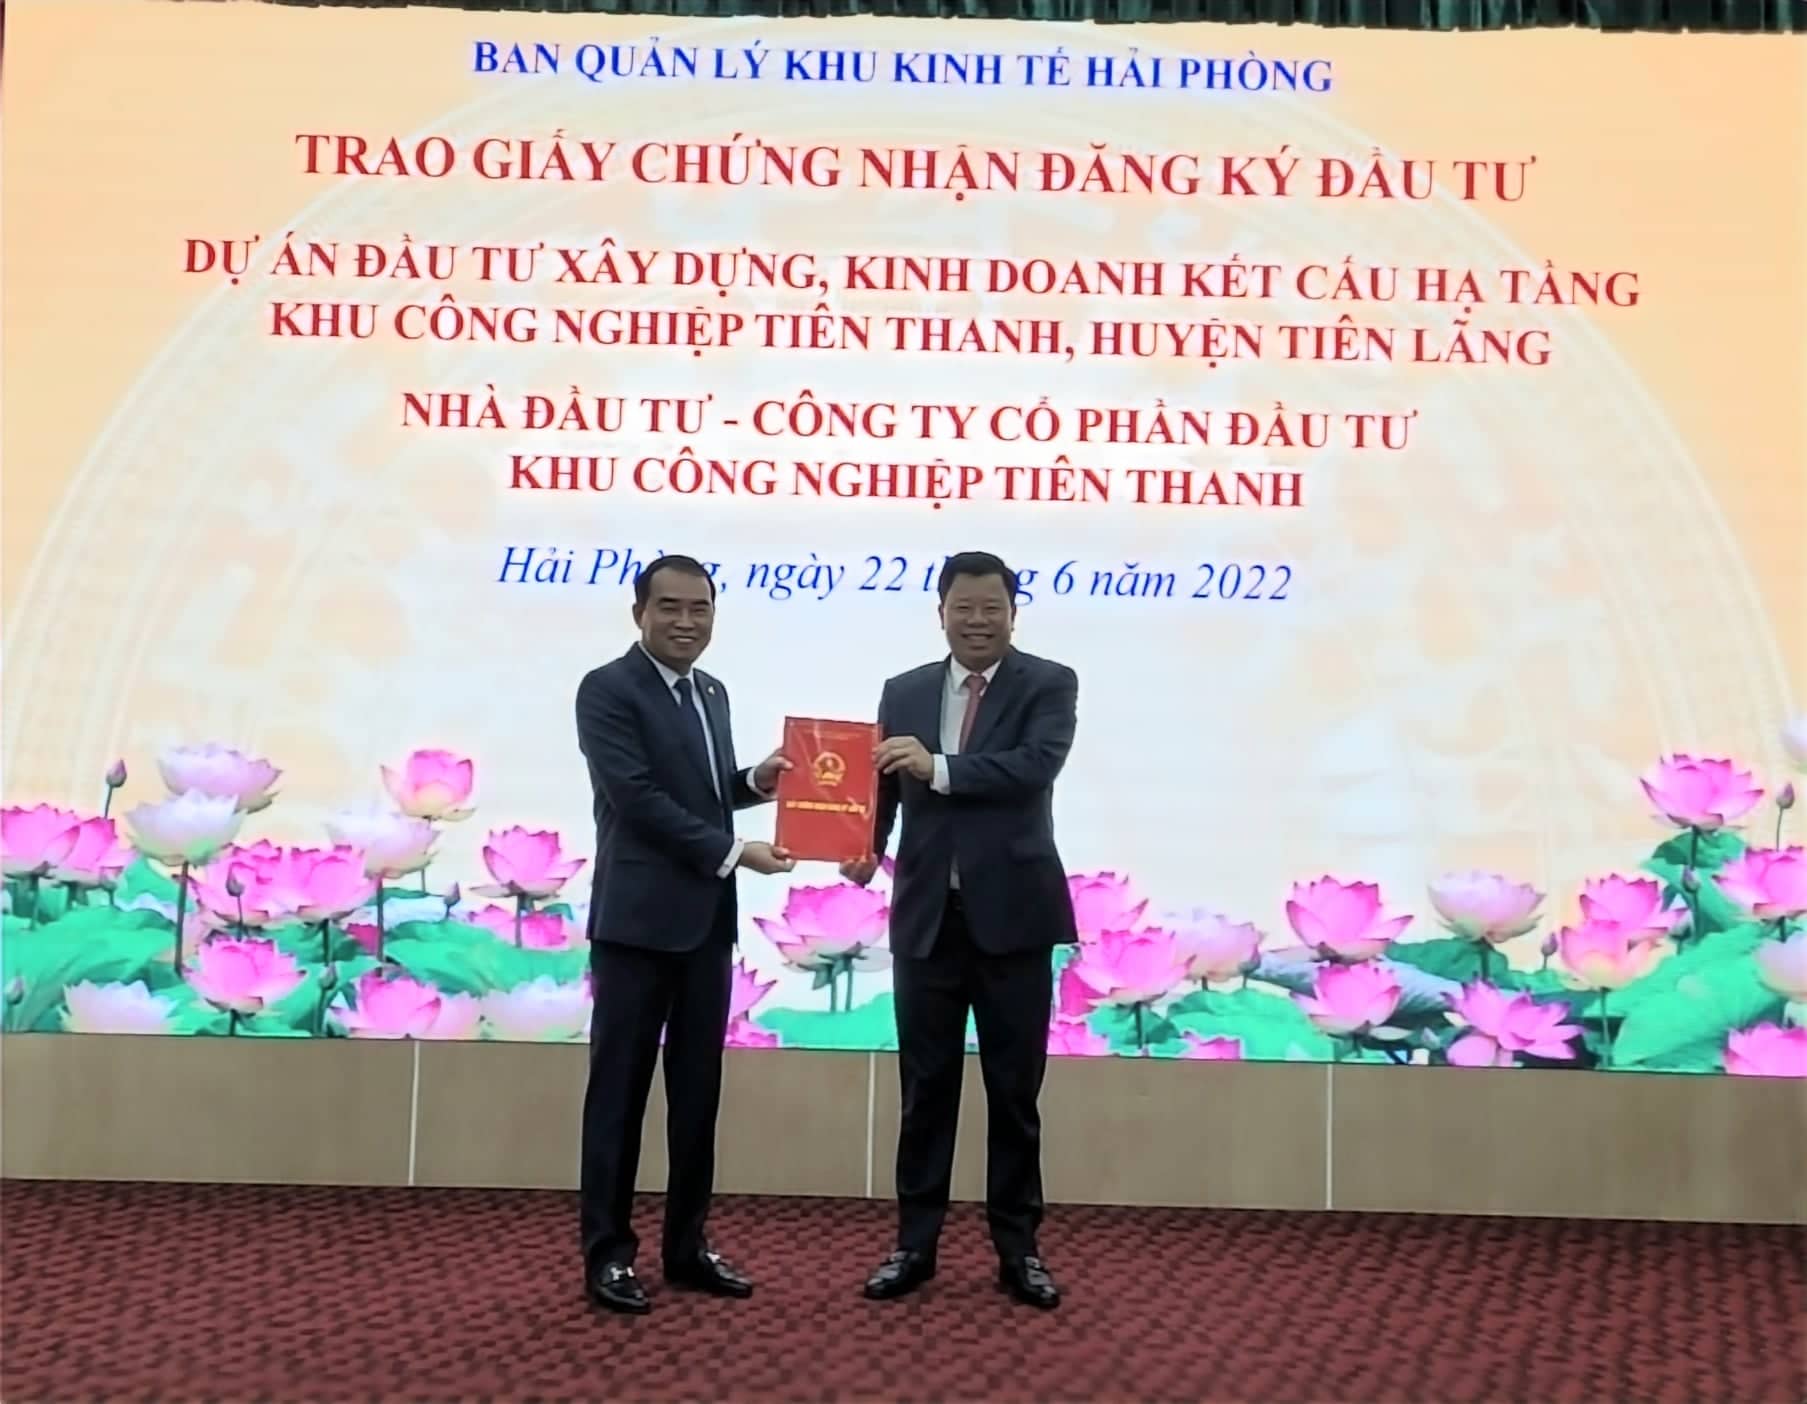 Ông Lê Trung Kiên, Trưởng Ban Quản lý Khu kinh tế Hải Phòng trao Giấy chứng nhận đăng ký đầu tư cho Dự án đầu tư xây dựng và kinh doanh kết cấu hạ tầng KCN Tiên Thanh, huyện Tiên Lãng